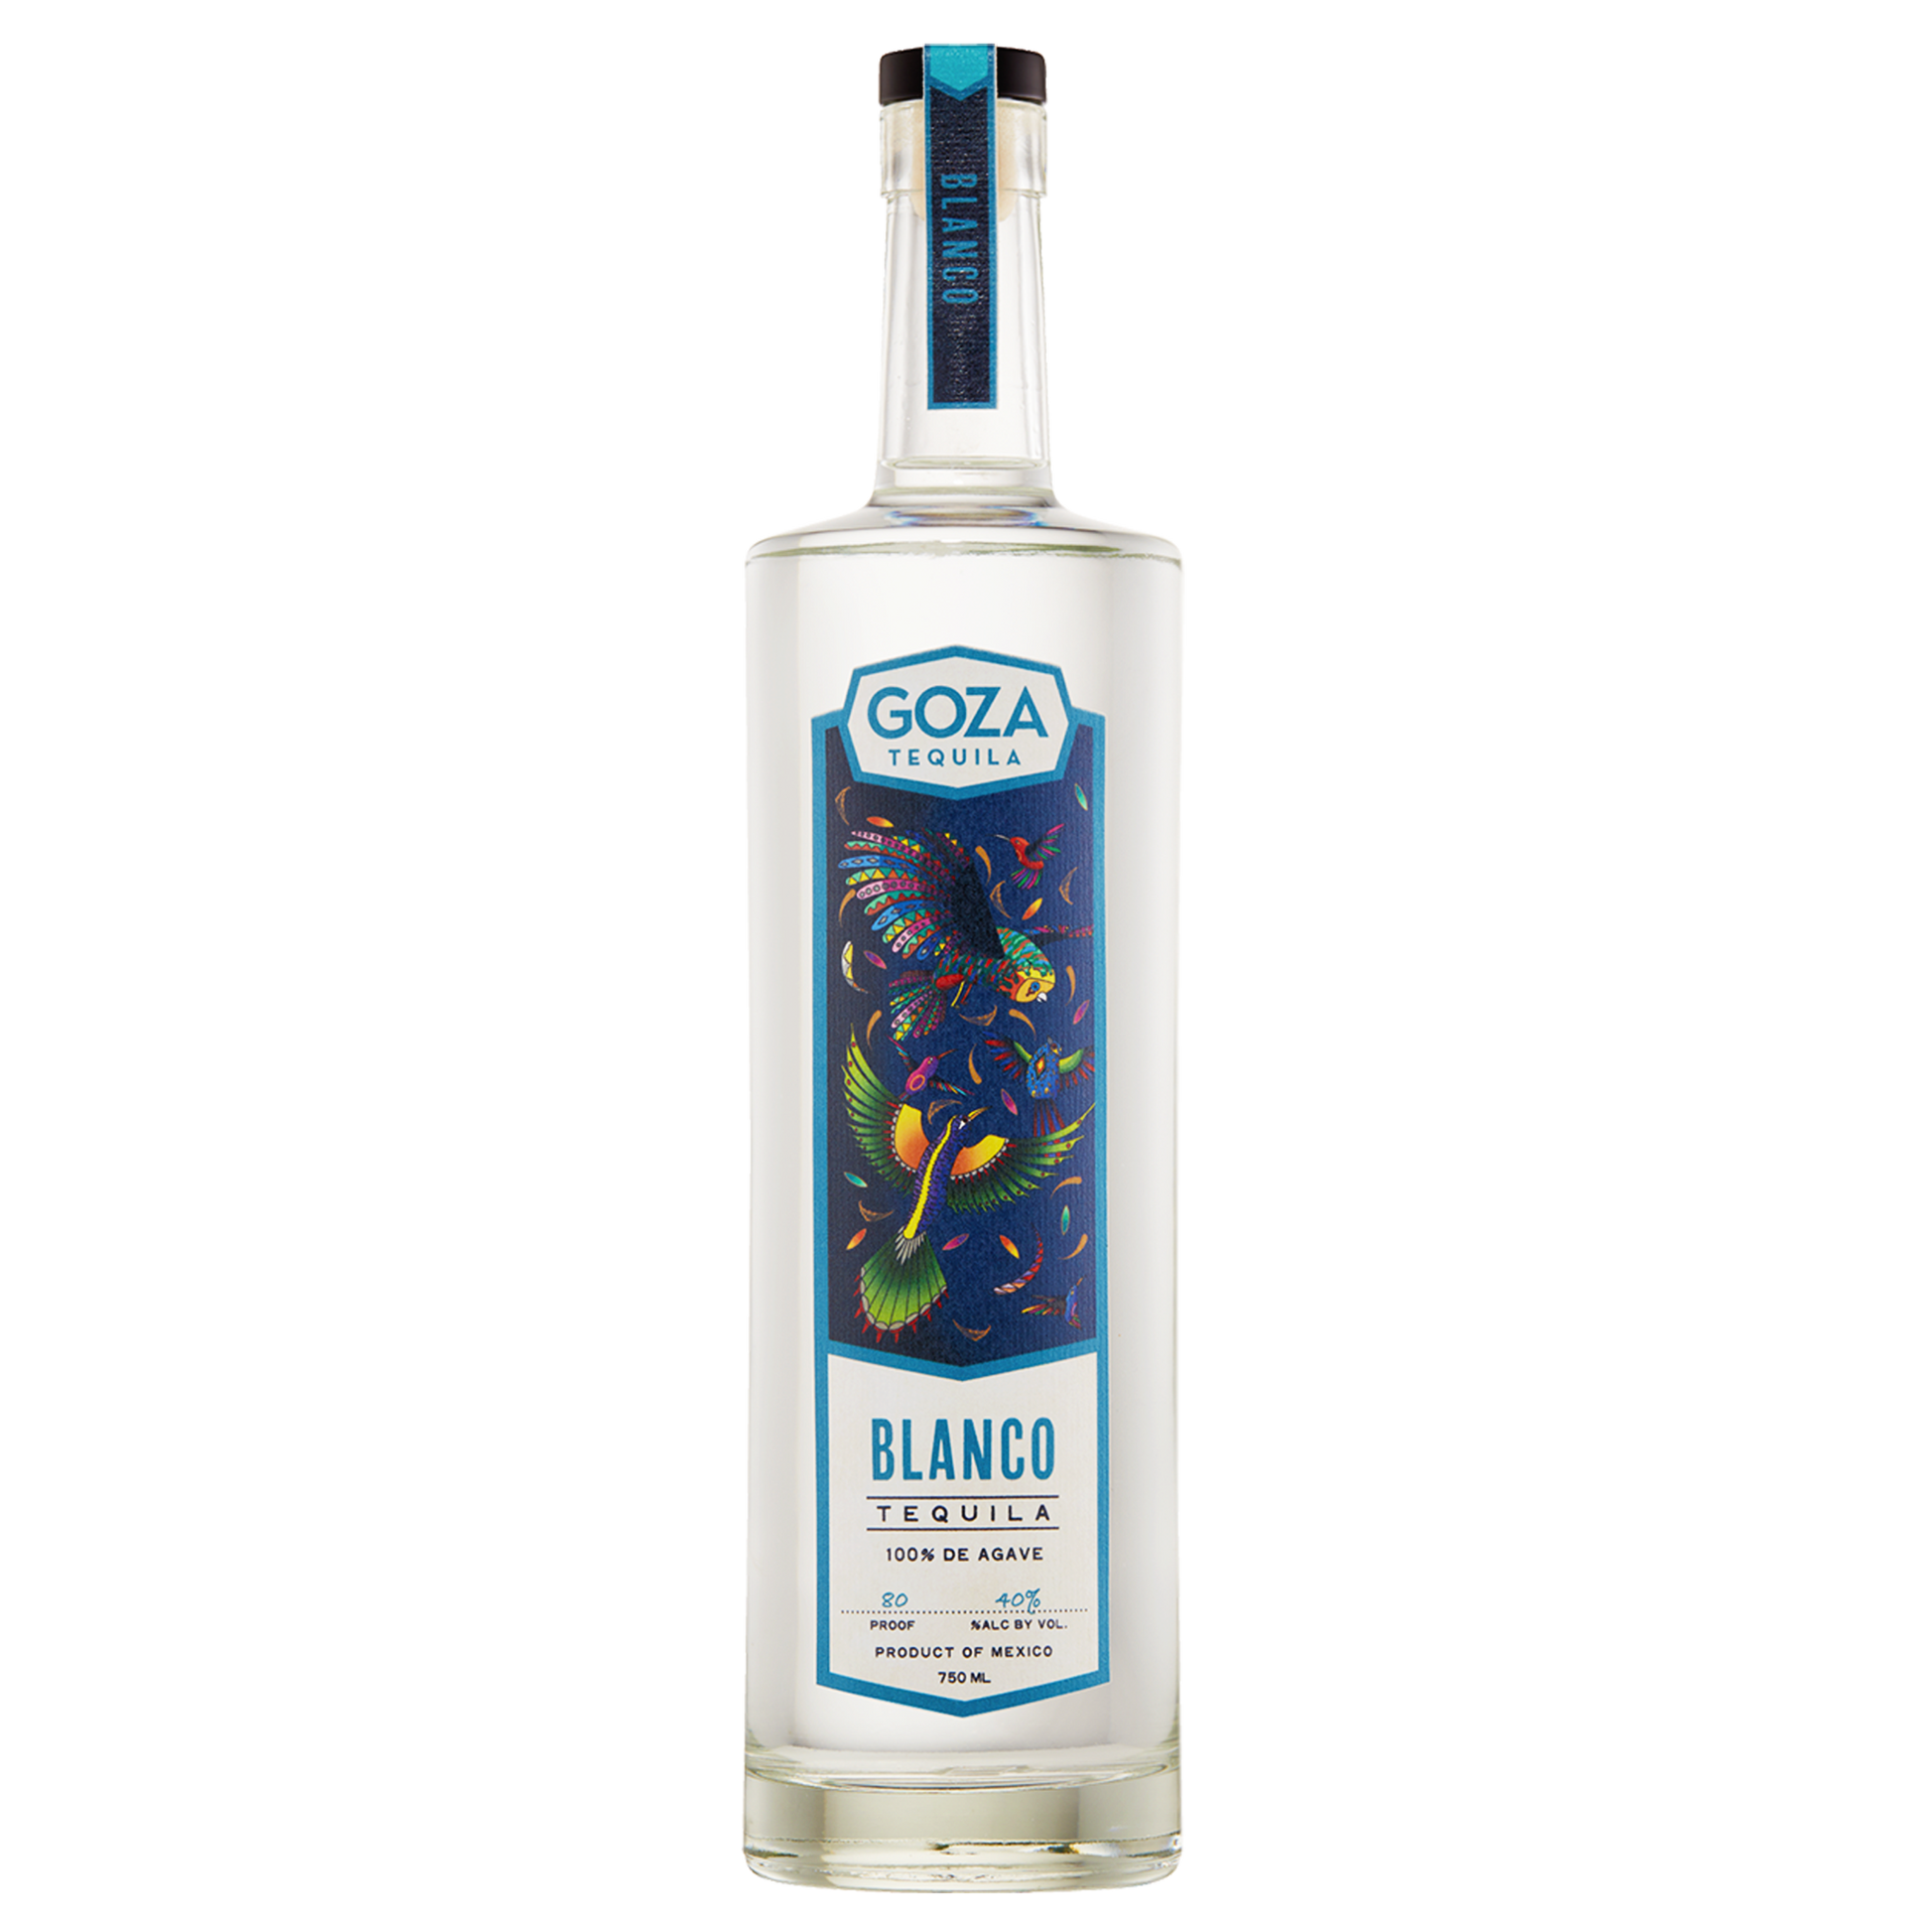 Blanco Tequila bottle